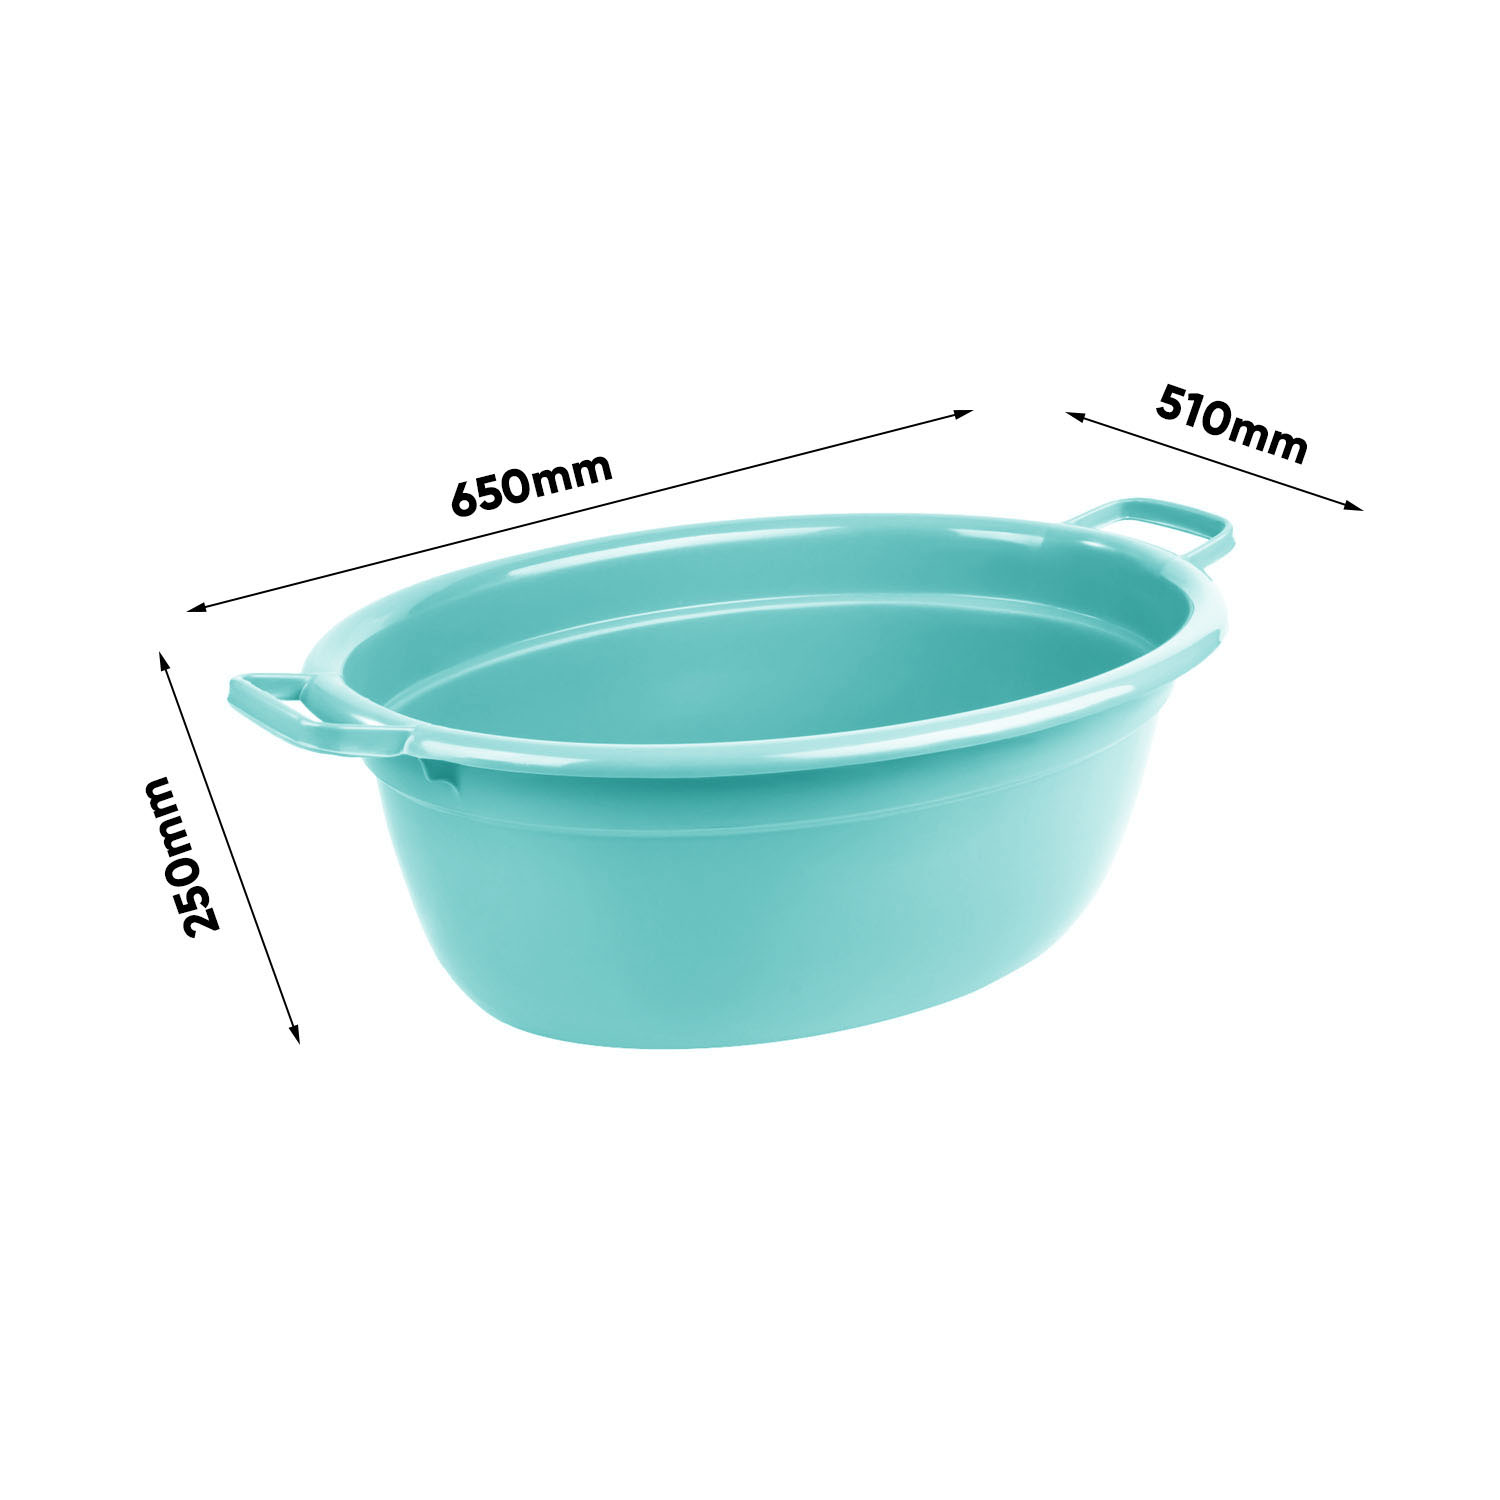 Wymiary Alva laundry tub Water blue (1)